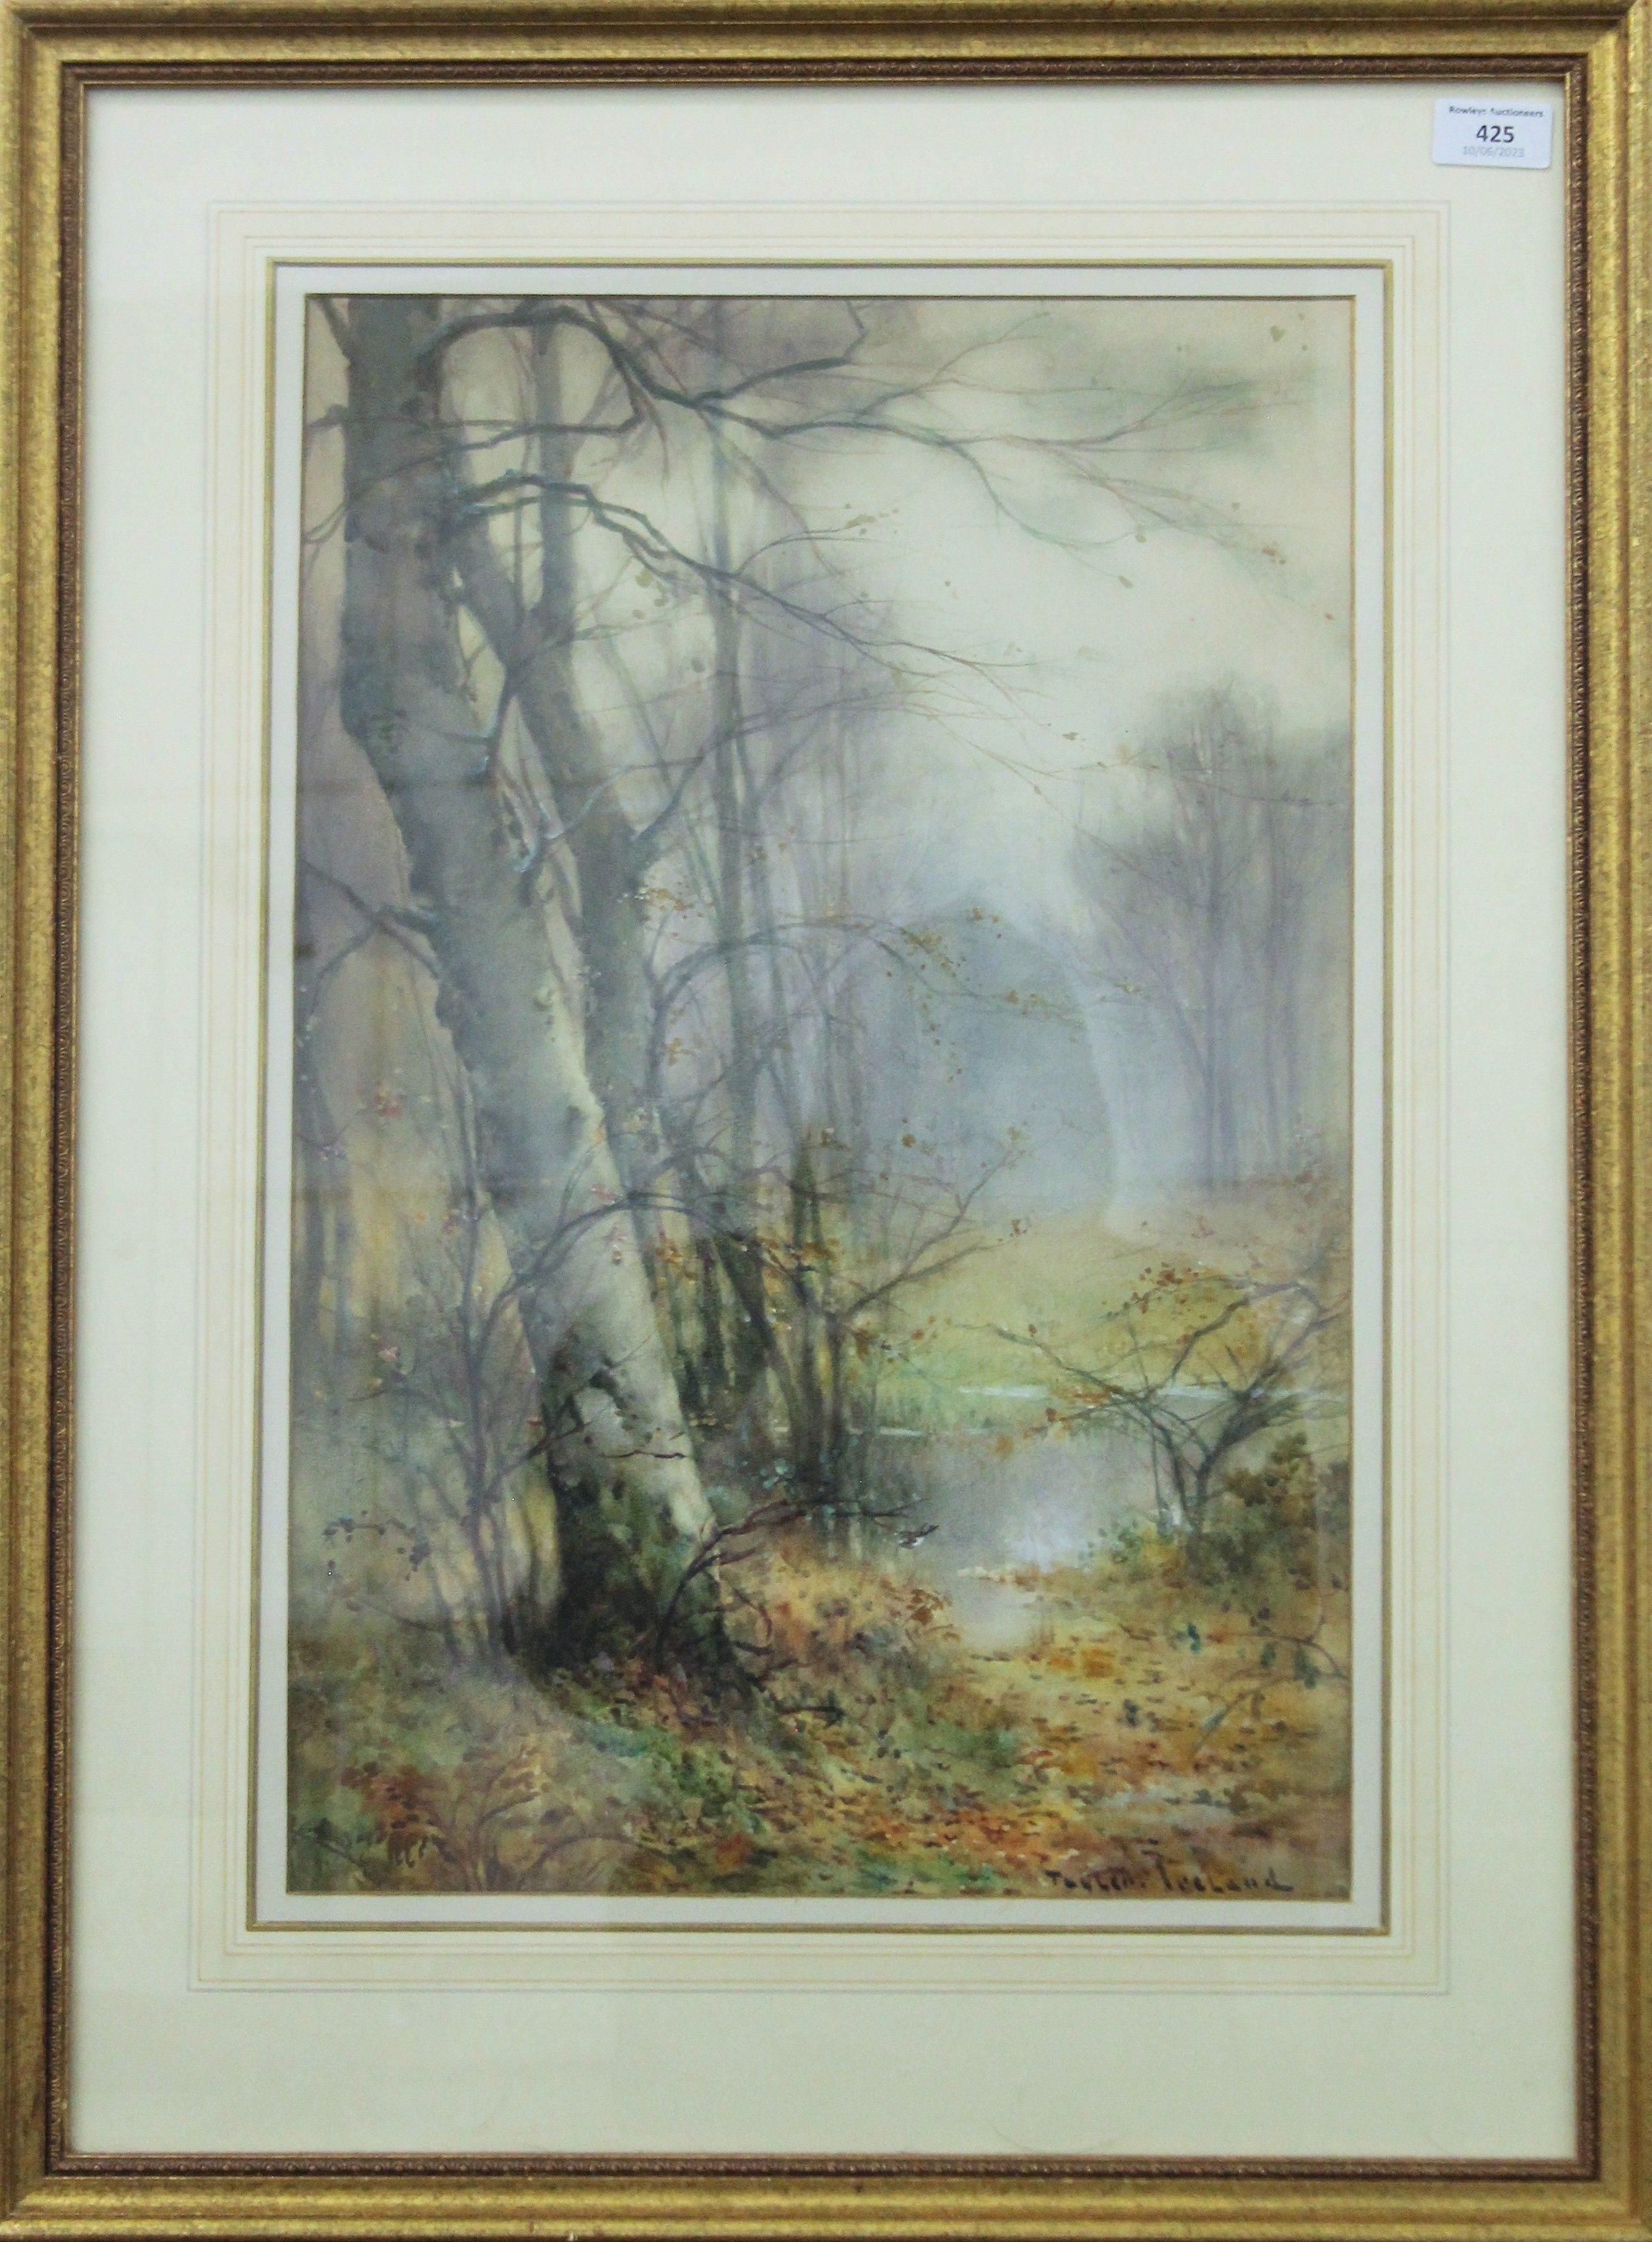 THOMAS TAYLOR IRELAND (19th century) British, Woodland Scene, watercolour, framed and glazed. - Image 2 of 3